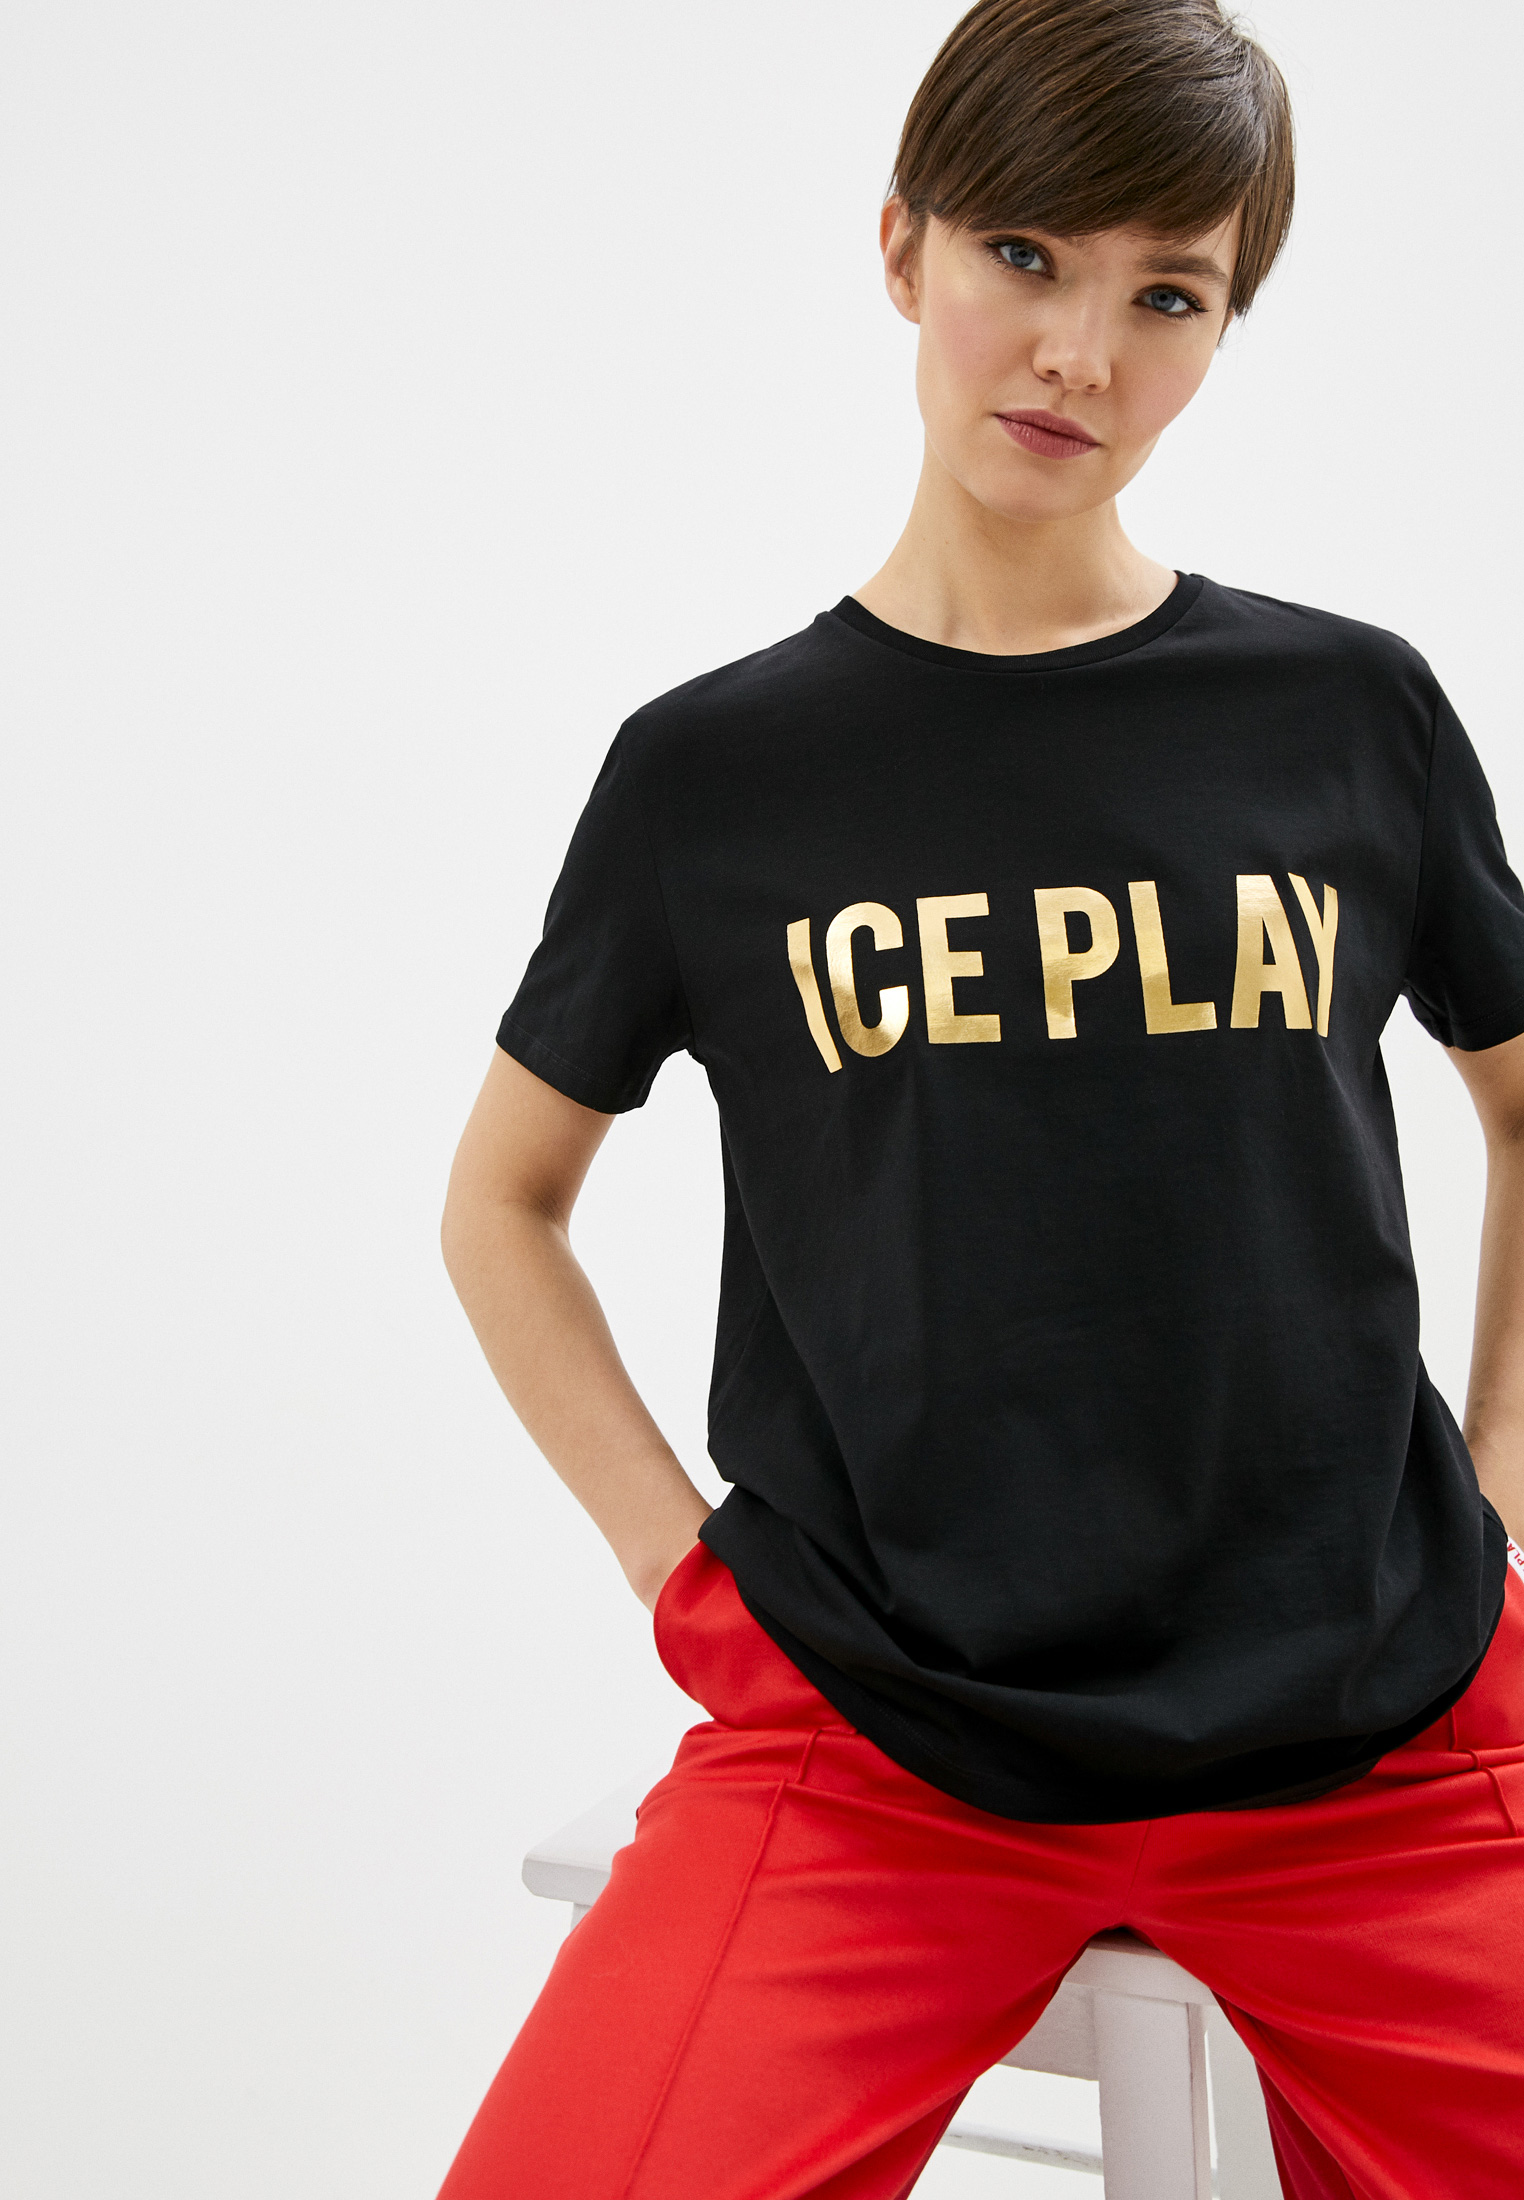 Одежда айс. Футболка Play. Ice Play. Ice Play одежда. Итальянский бренд Ice Play.